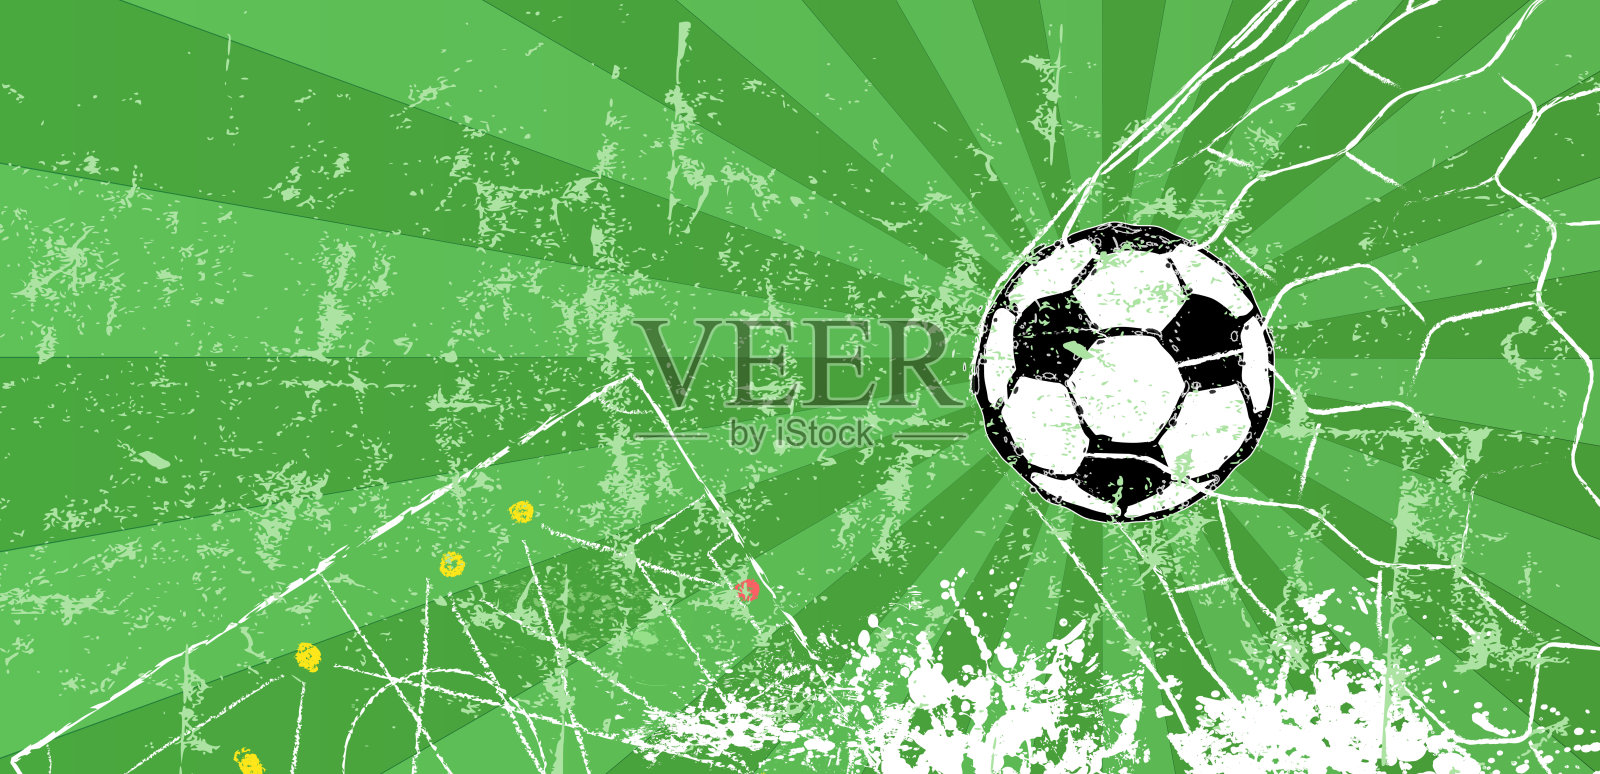 足球/足球设计模板或背景插画图片素材